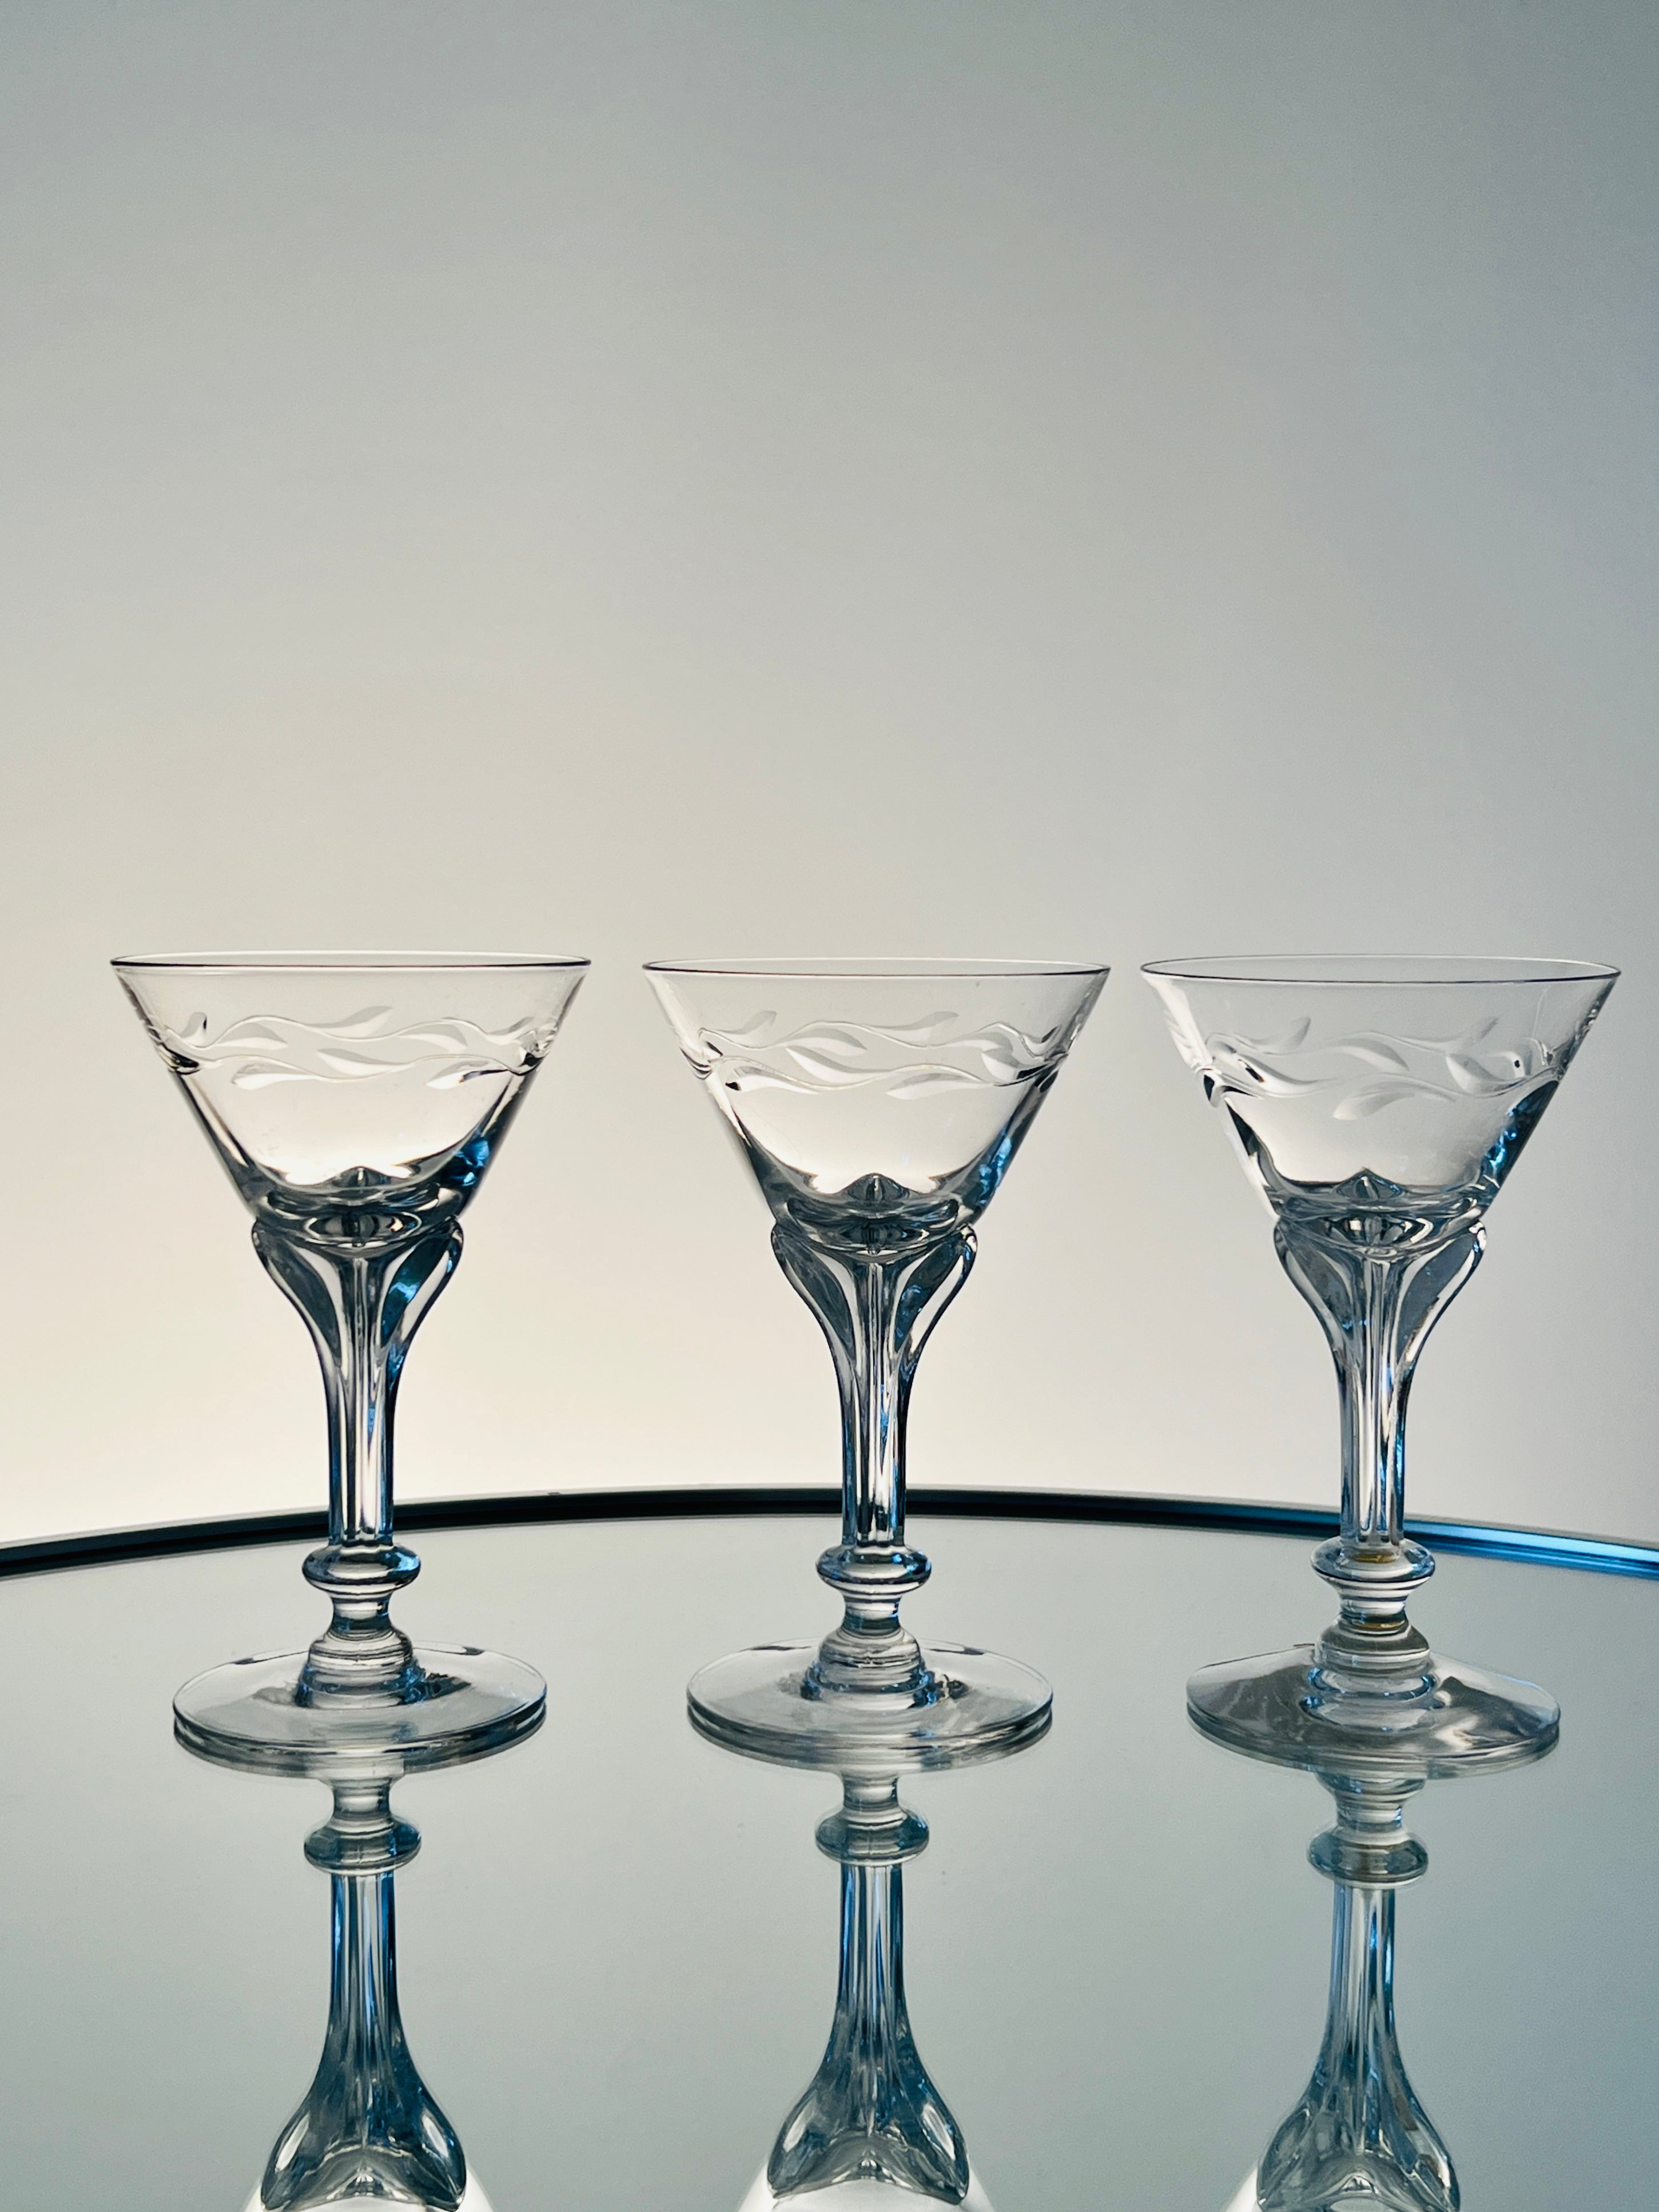 Set / 12 verres à cocktail en cristal de la Collection Lenox Wreath de Tiffin. Les verres soufflés à la main présentent un élégant motif de couronne gravée et une tige florale stylisée, évoquant des éléments des styles Art nouveau et Art déco.  Peut